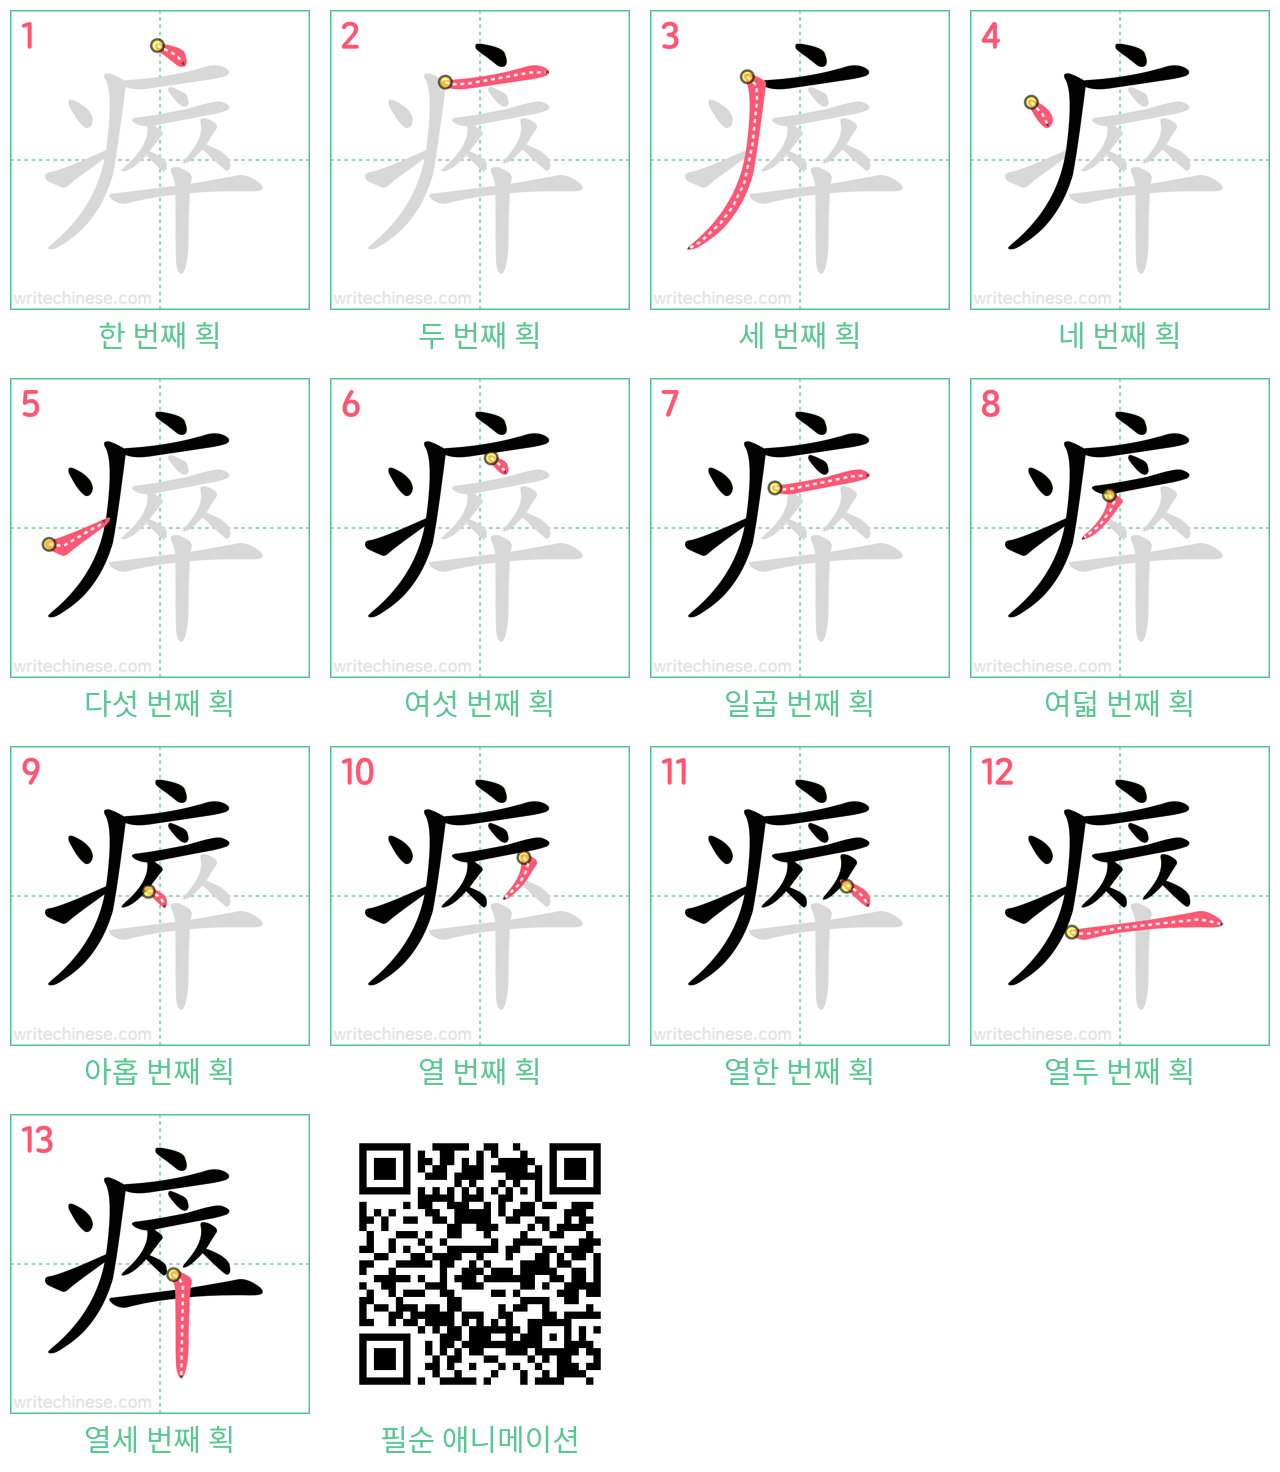 瘁 step-by-step stroke order diagrams